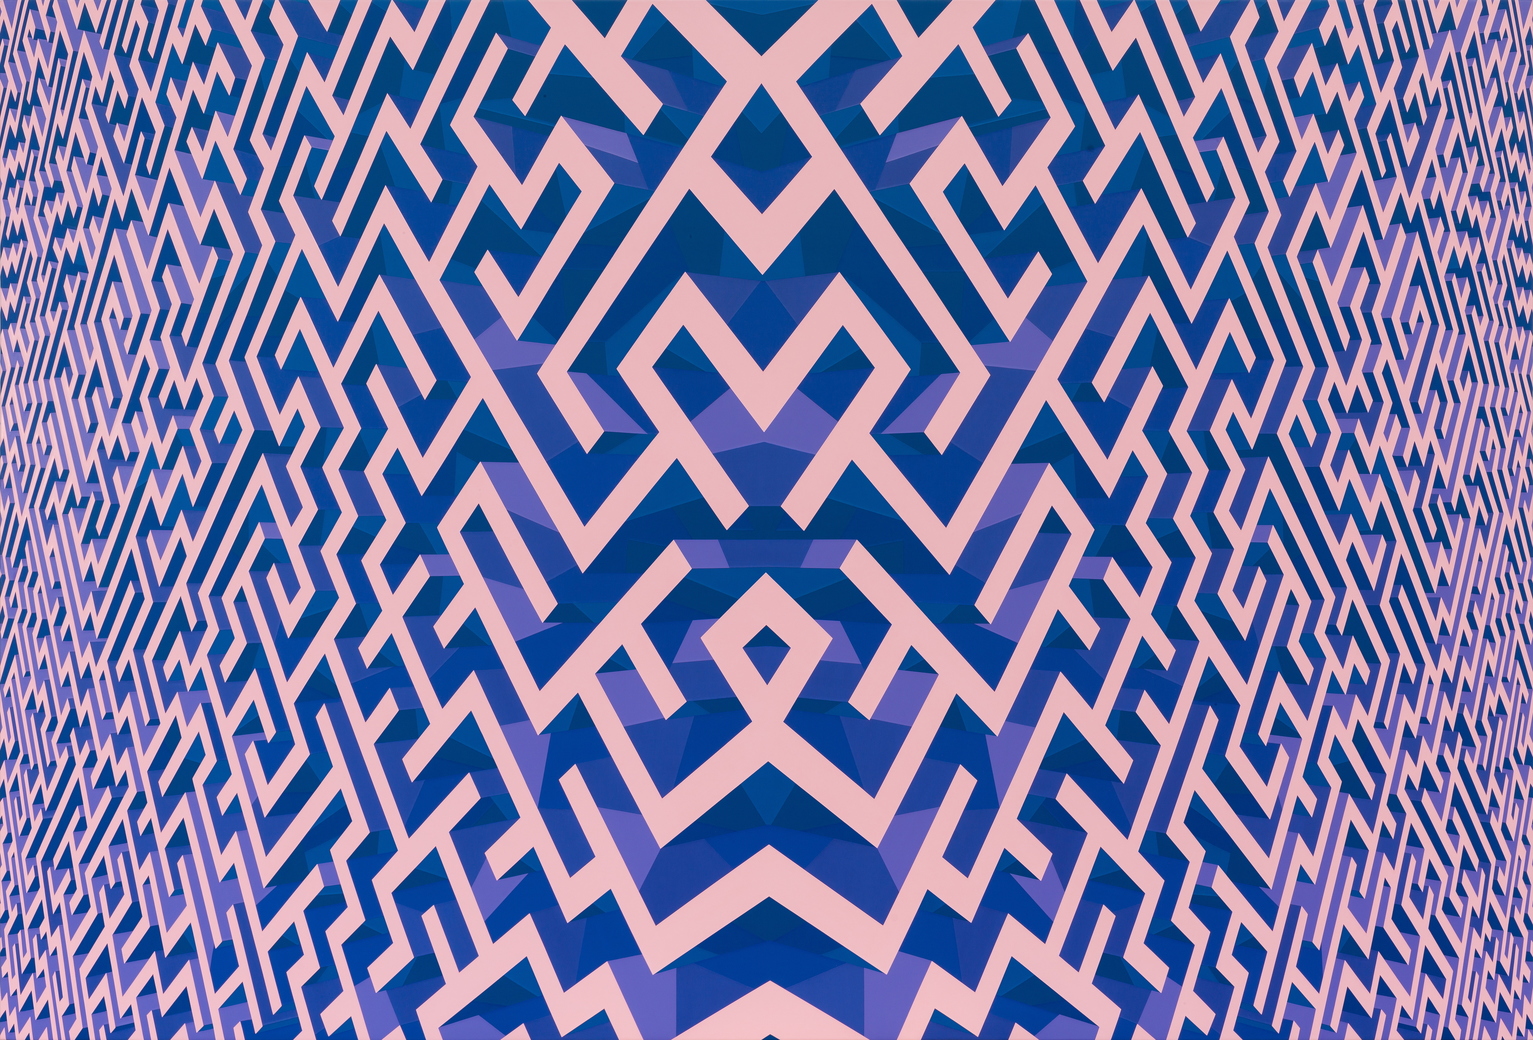 Digital Art Abstract 3D 3D Abstract Maze Symmetry 1533x1040